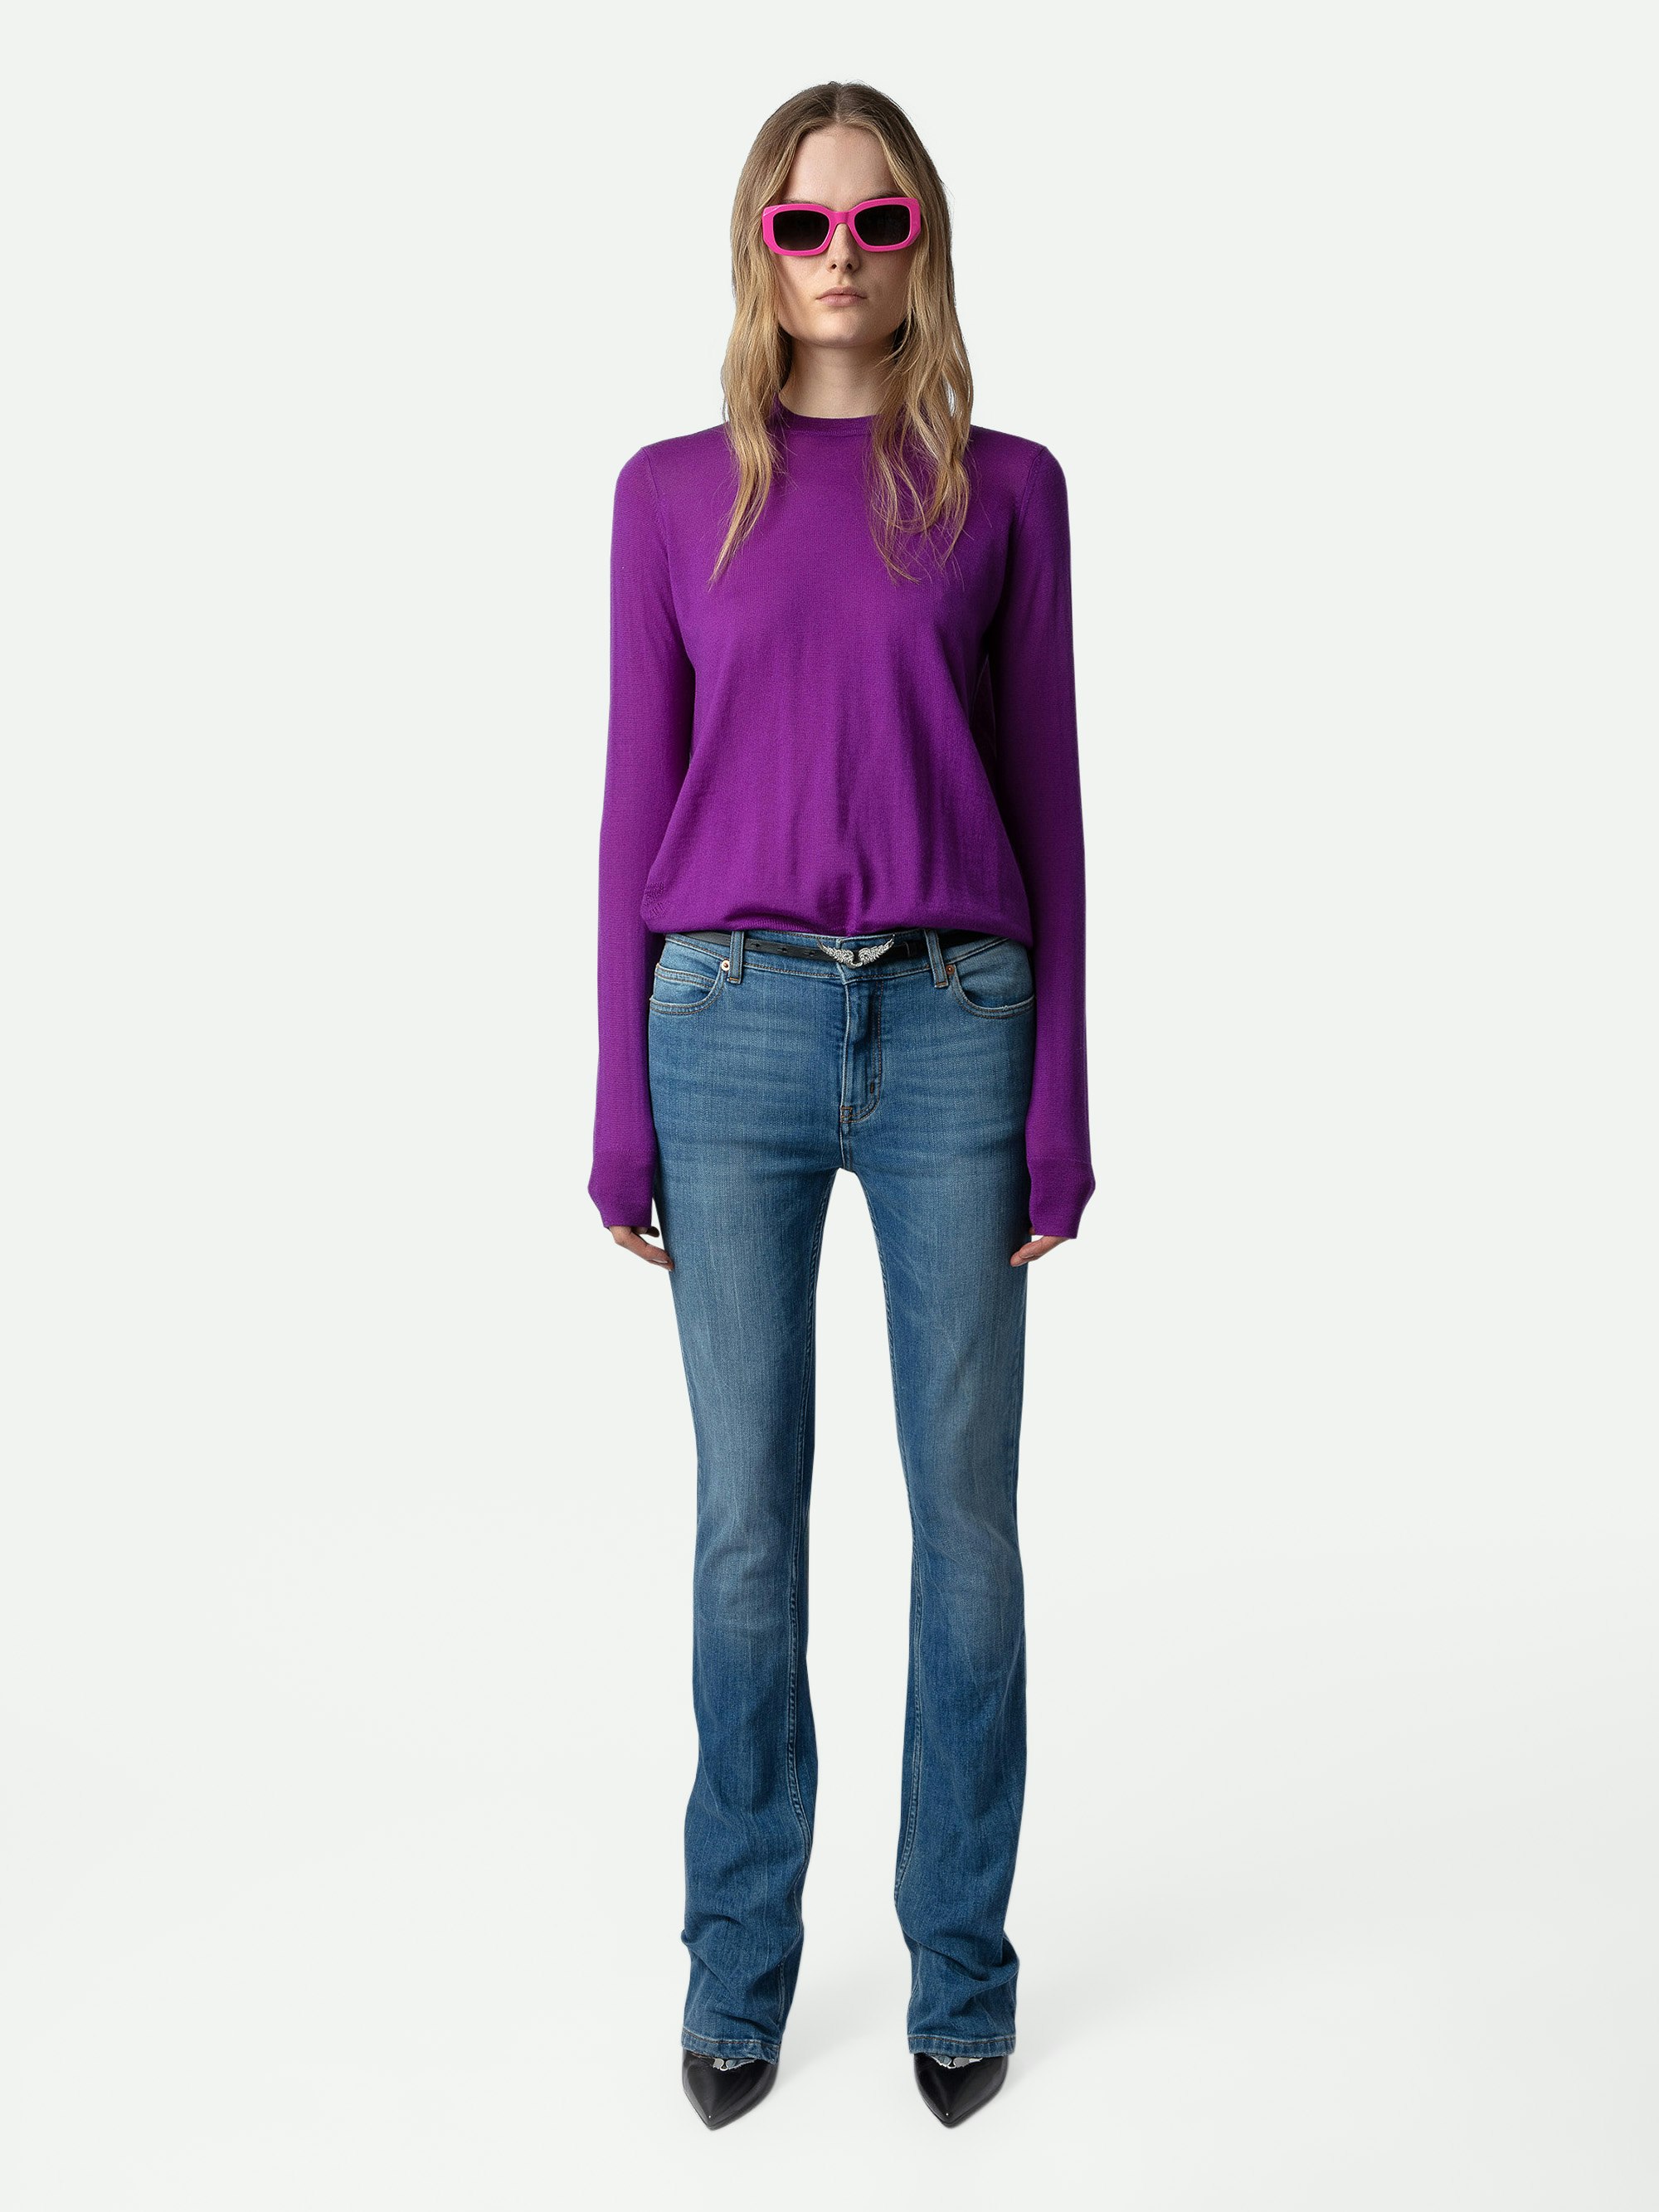 Maglione Emma 100% Lana Merino - Maglione in 100% lana merino viola girocollo con maniche lunghe e schiena incrociata aperta.